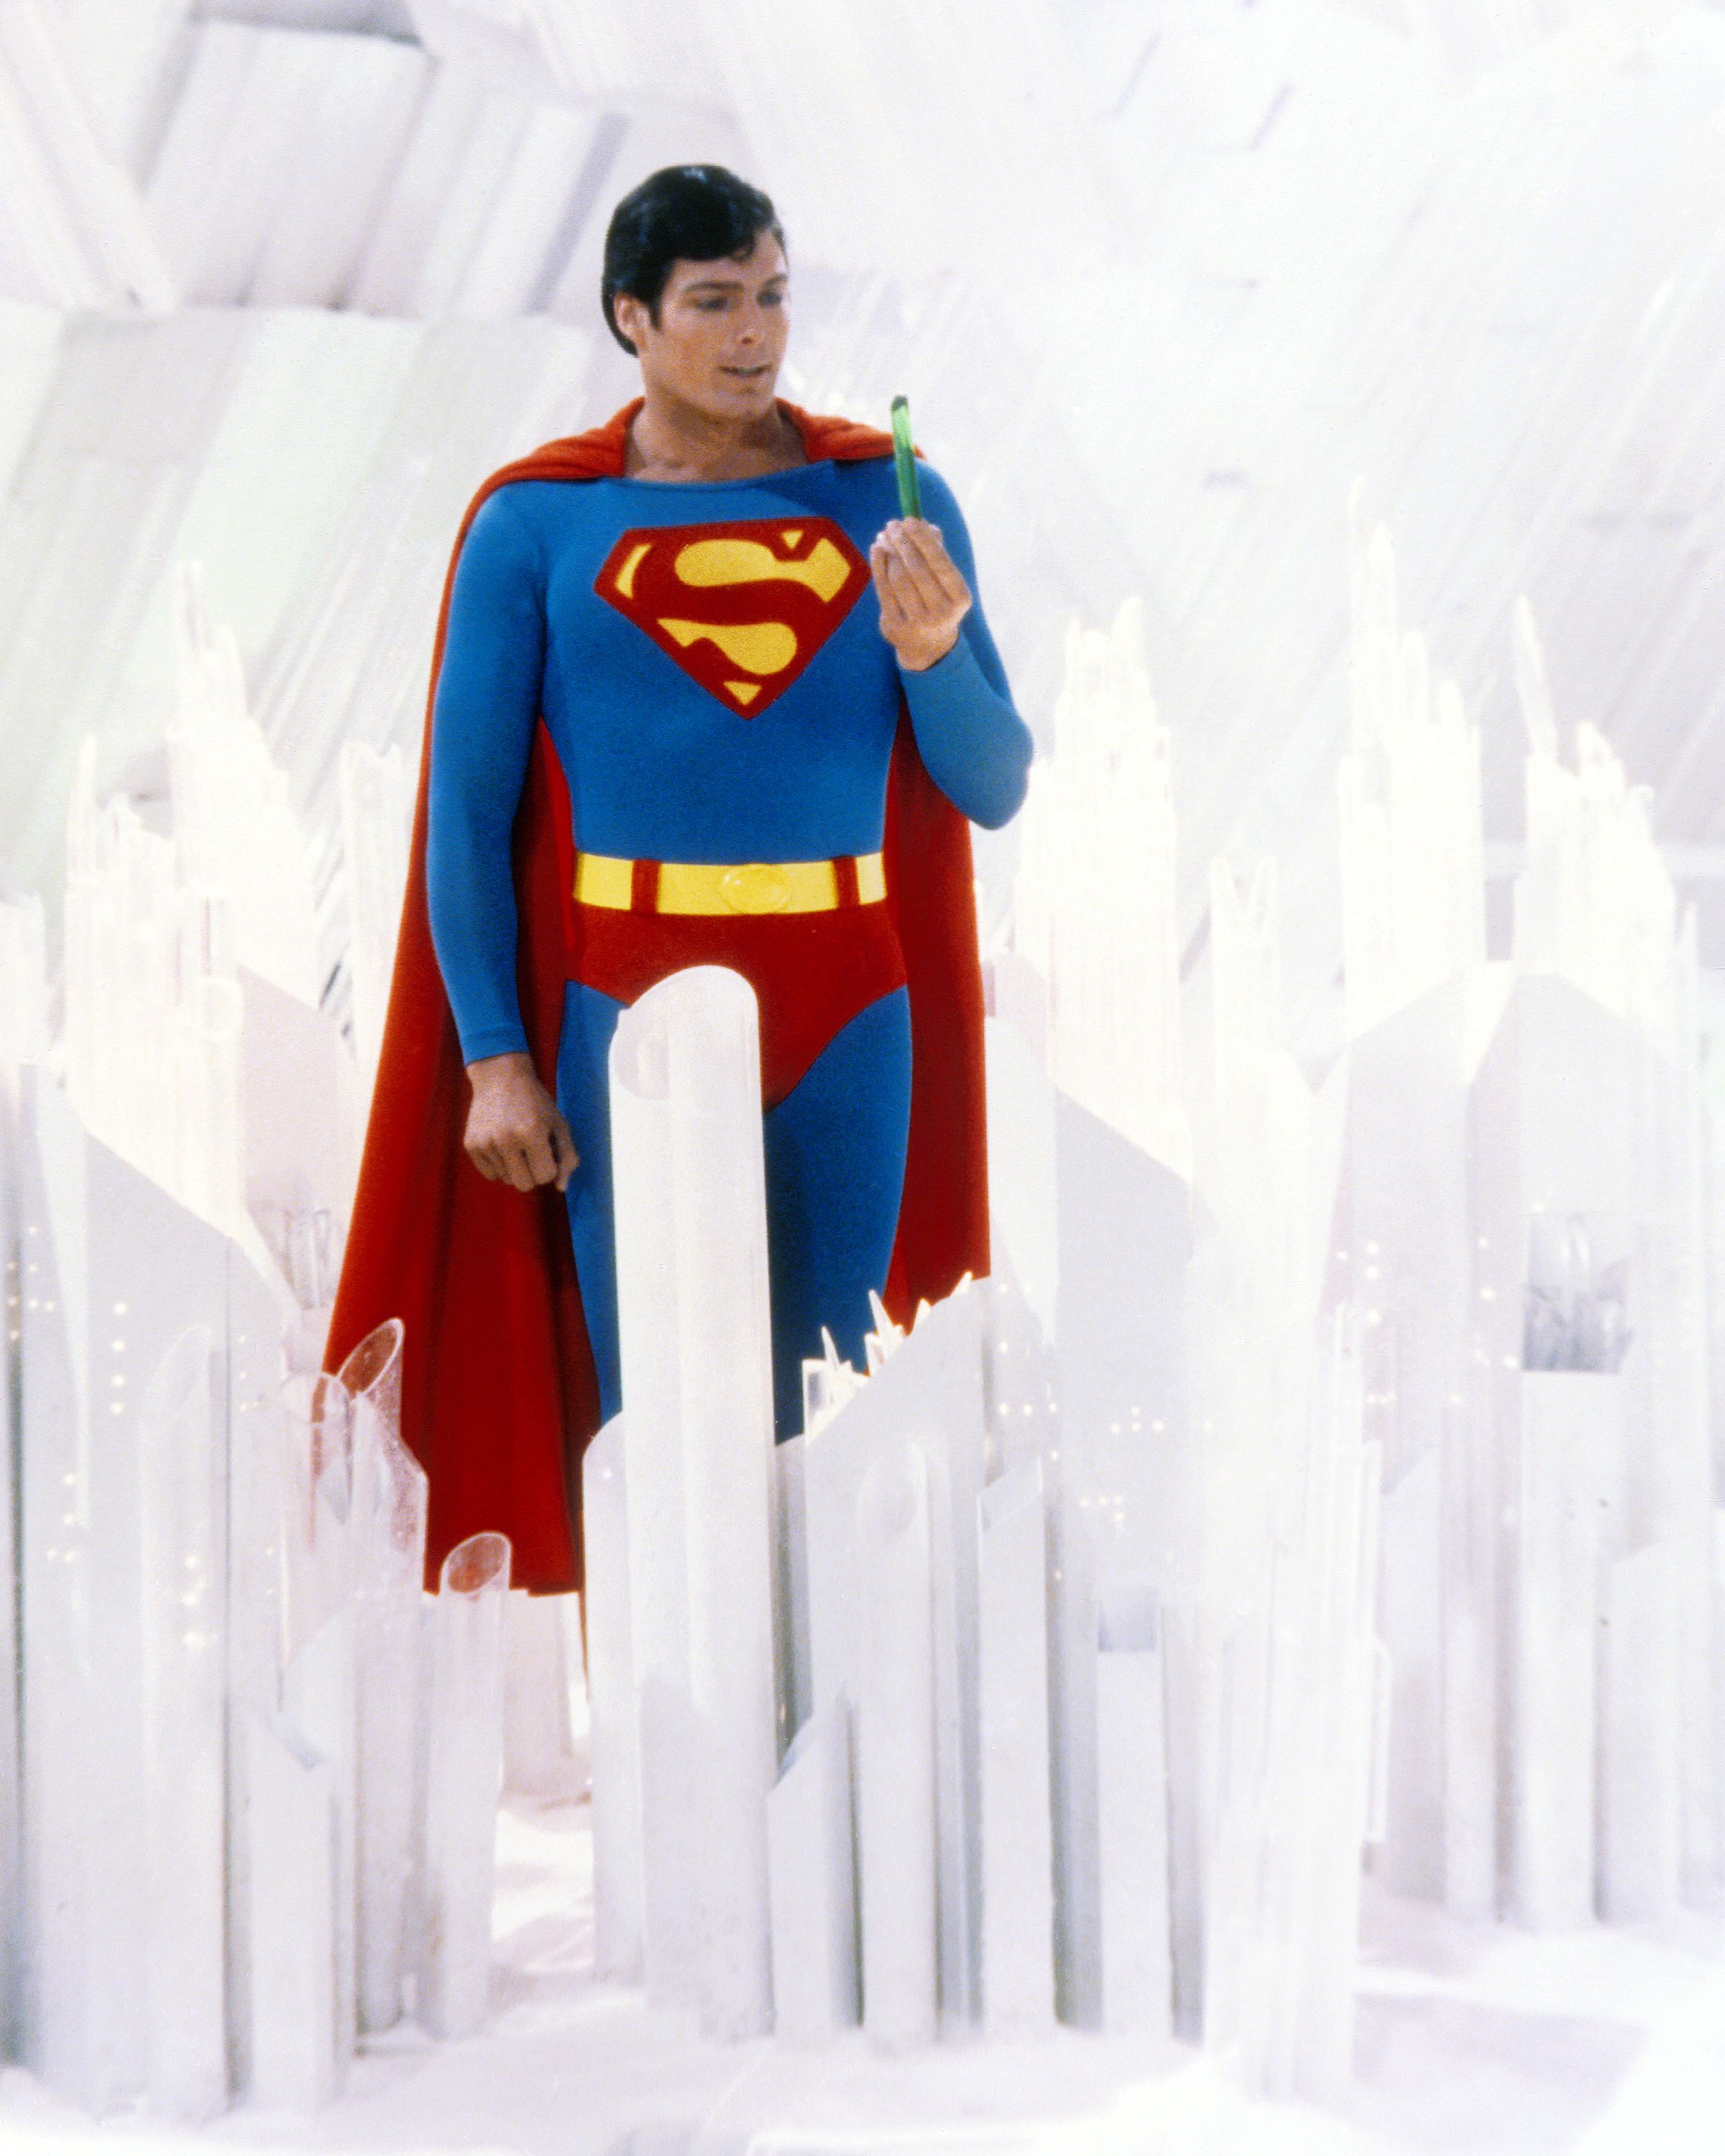 Action Figure Super Homem Superman Christopher Reeve: Superman O